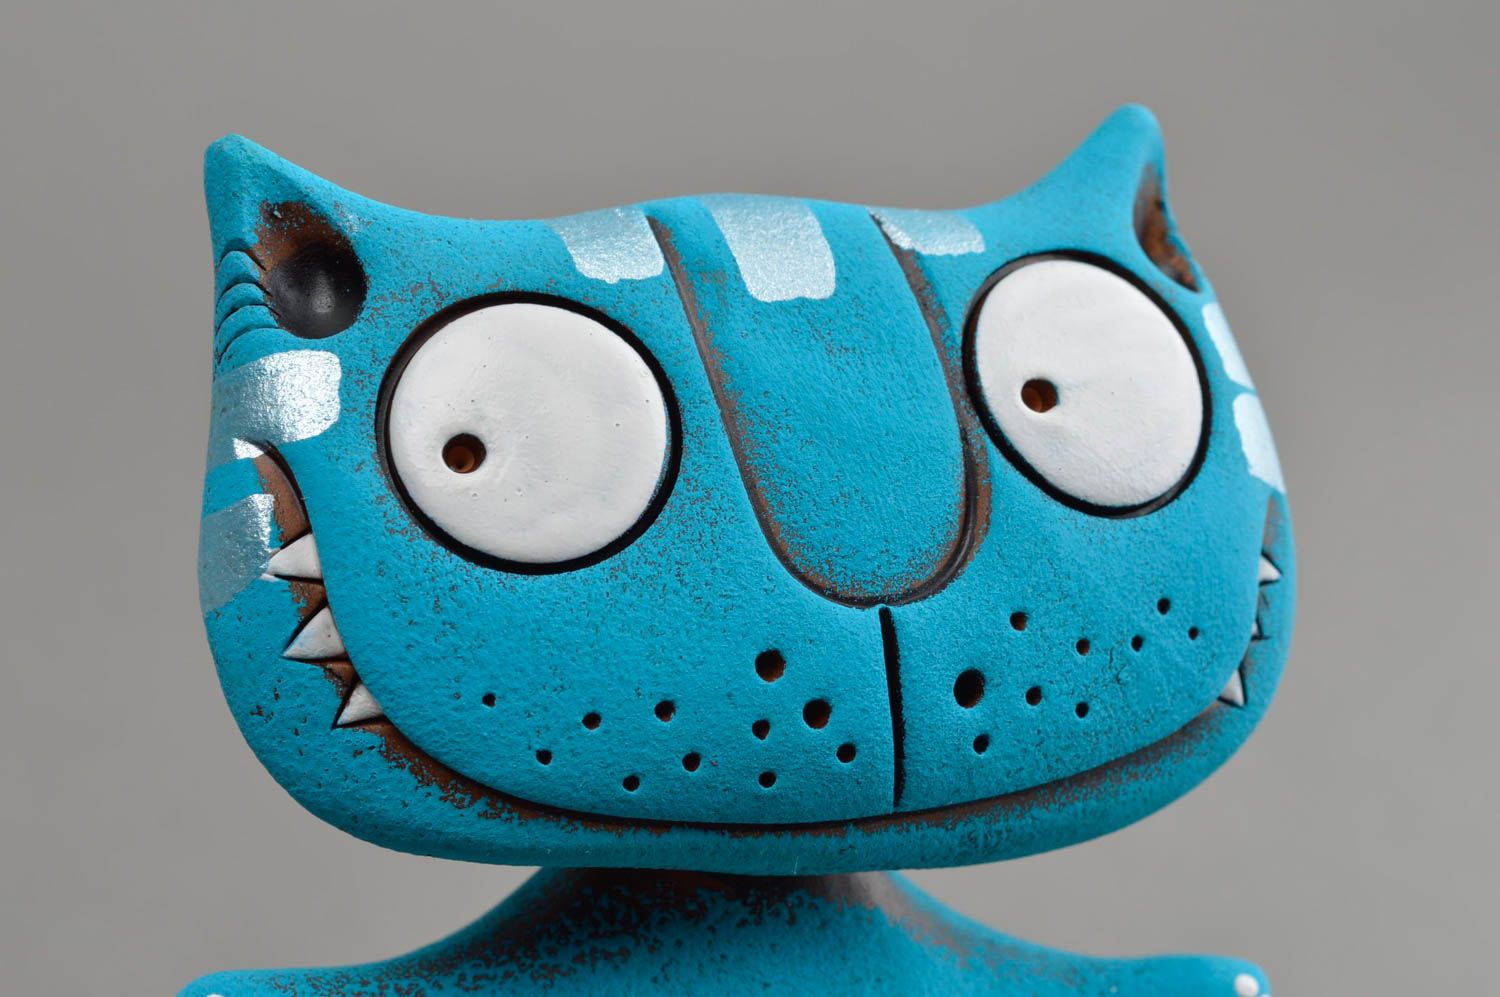 Синяя глиняная статуэтка ручной работы авторского дизайна расписная Кот фото 4